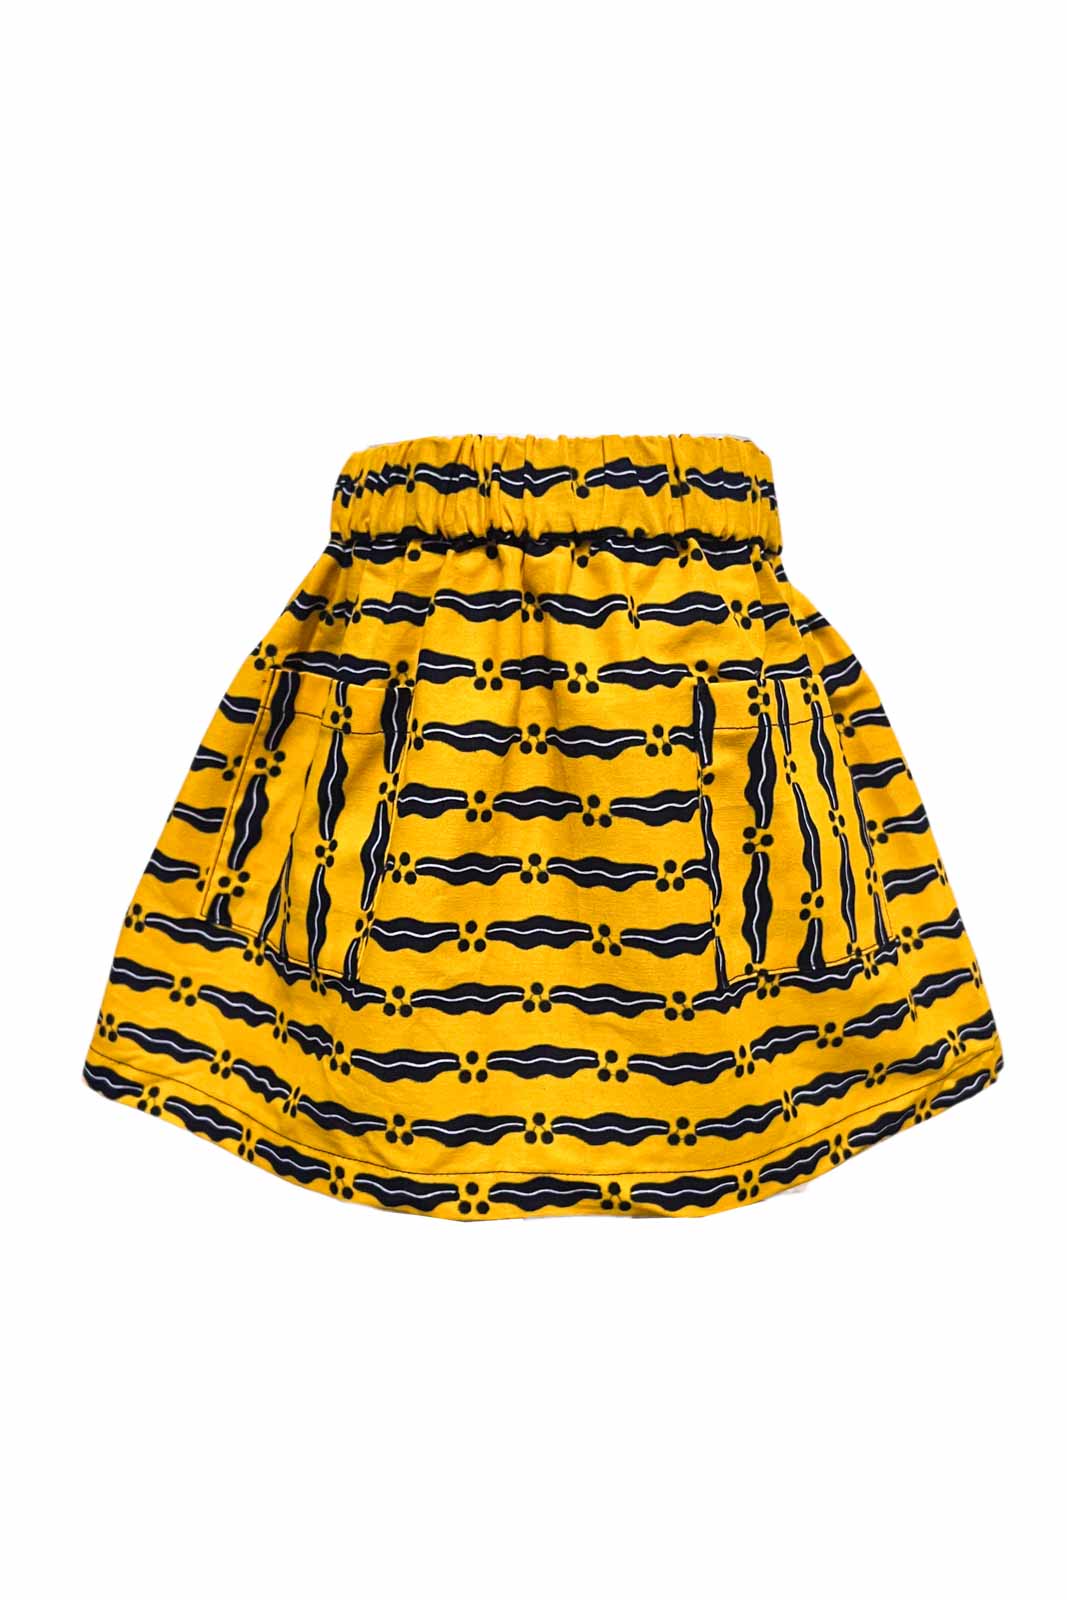 Bertie Elasticated Skirt - Yellow couple lips print